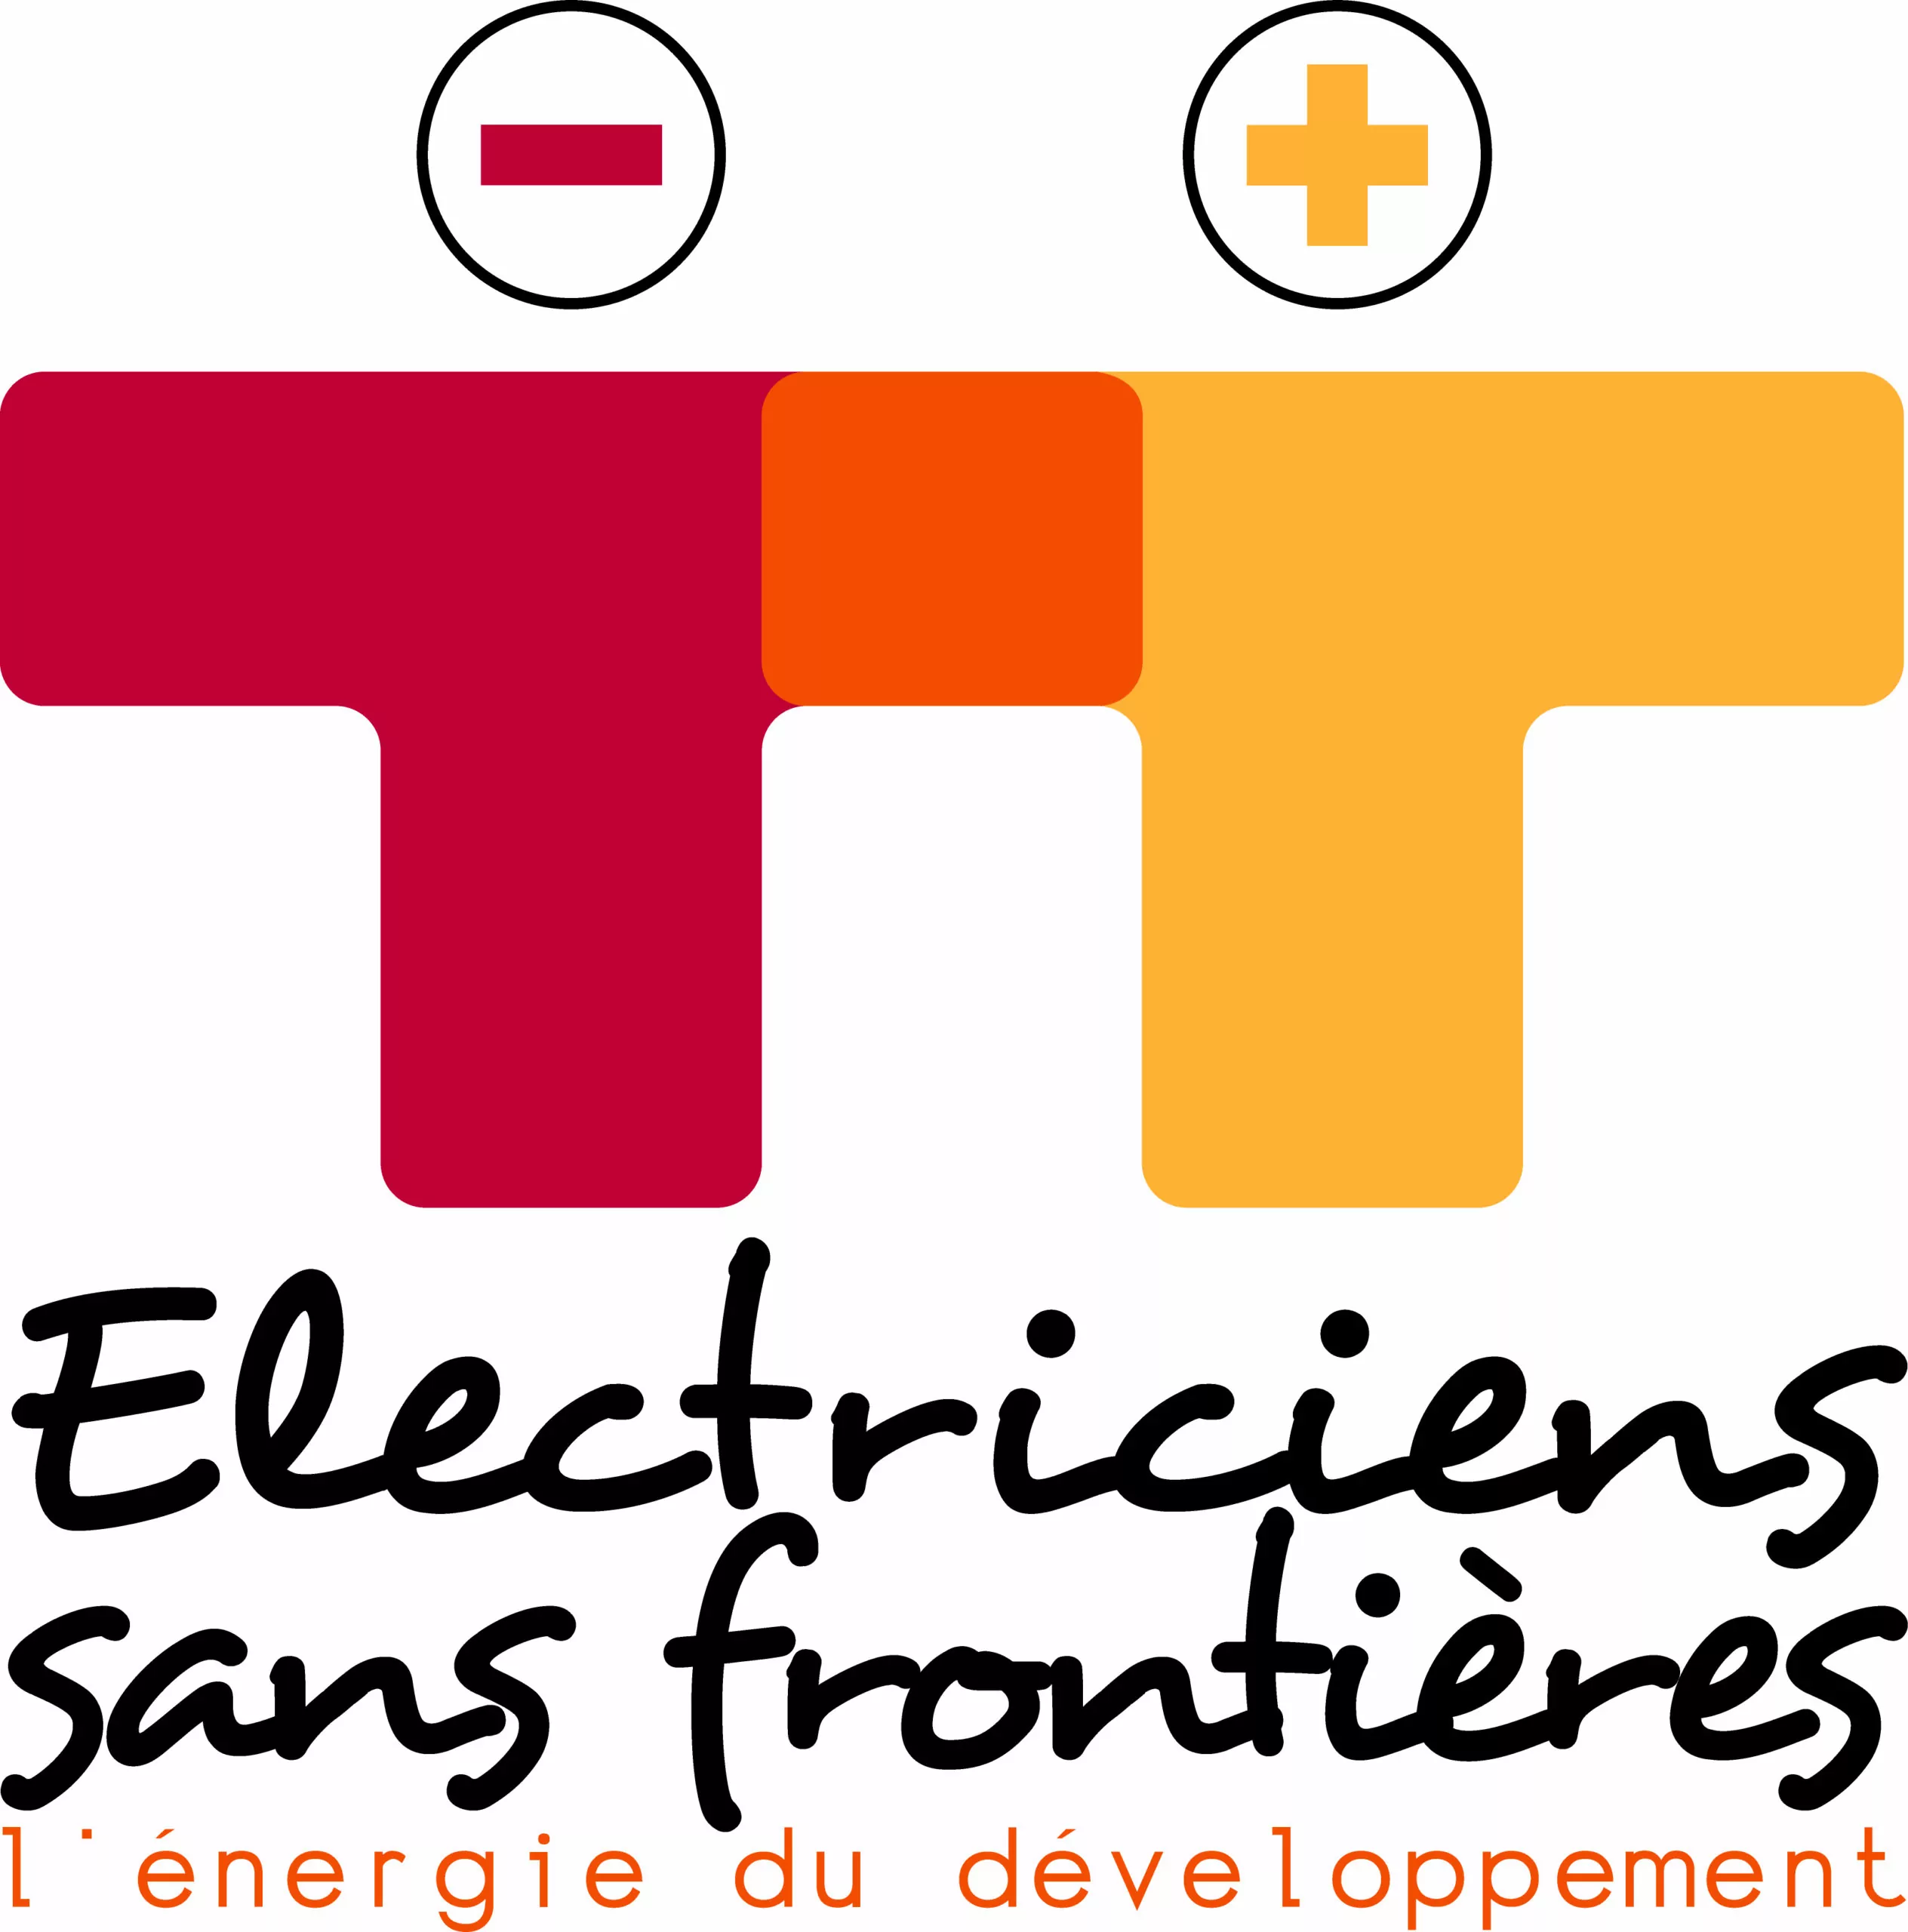 Electriciens sans frontières recherche un(e) chargé(e) de projets, Paris, France